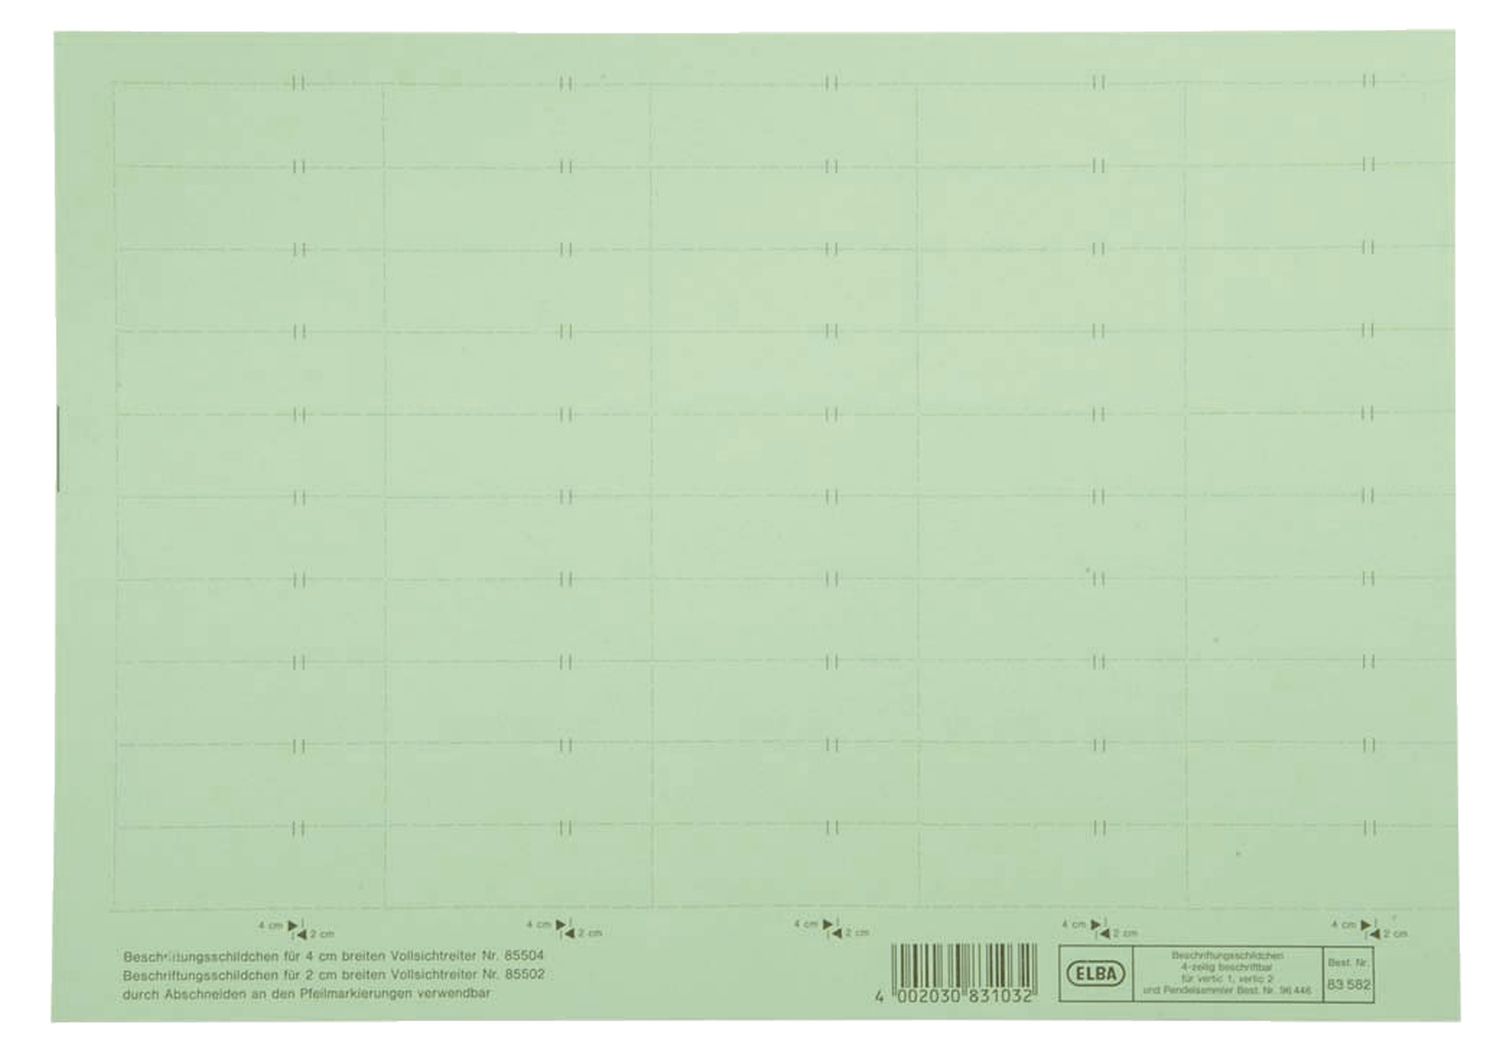 Beschriftungsschilder Elba vertic® 100420976 / 83582GN für Elba vertic®, PC-Beschriftung, 58 x 18 mm, grün, 50 Stück